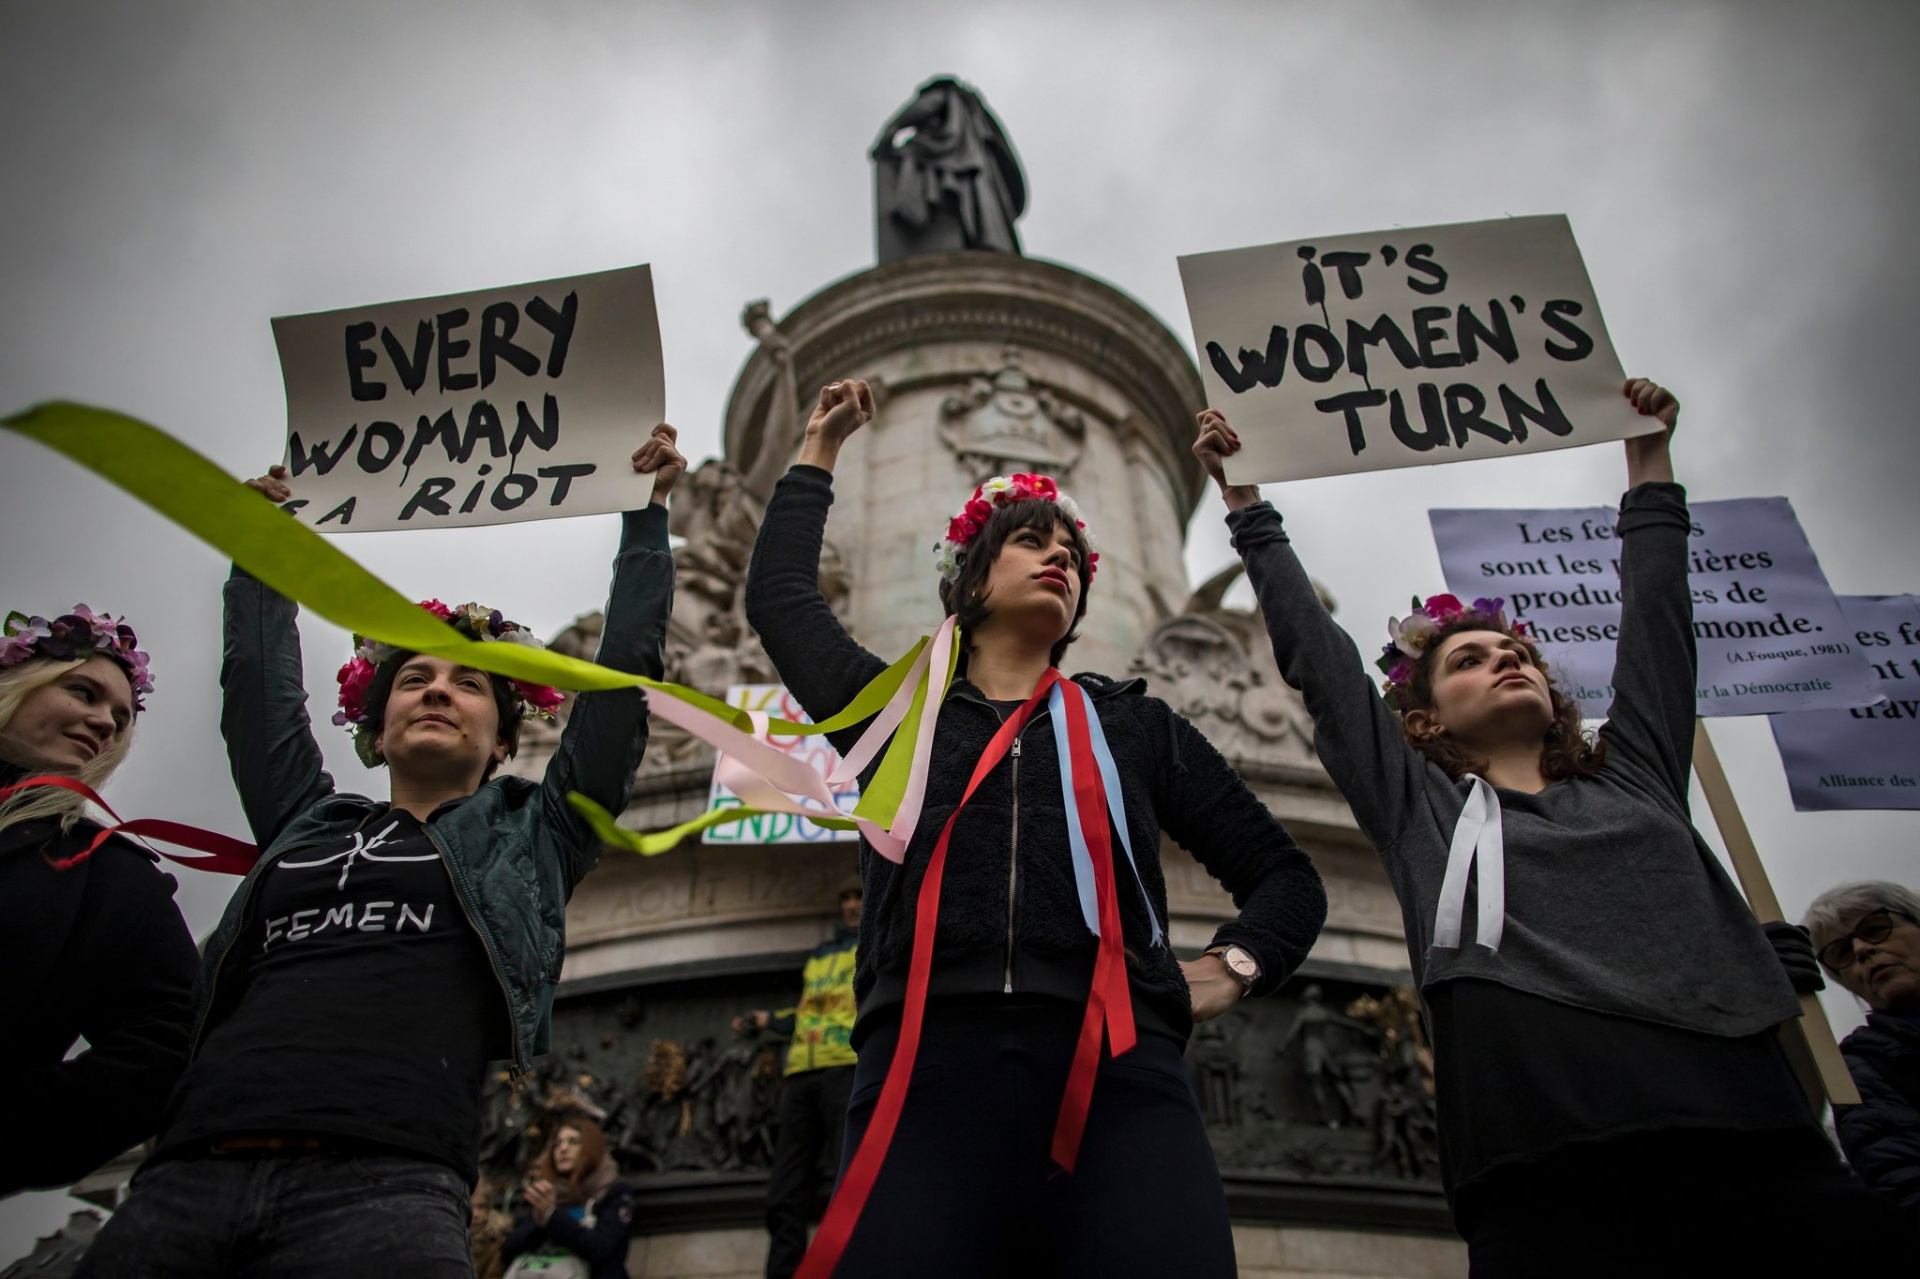   Một cuộc biểu tình đòi nữ quyền ở Paris - Ảnh: Ian Langsdon/European Pressphoto Agency  